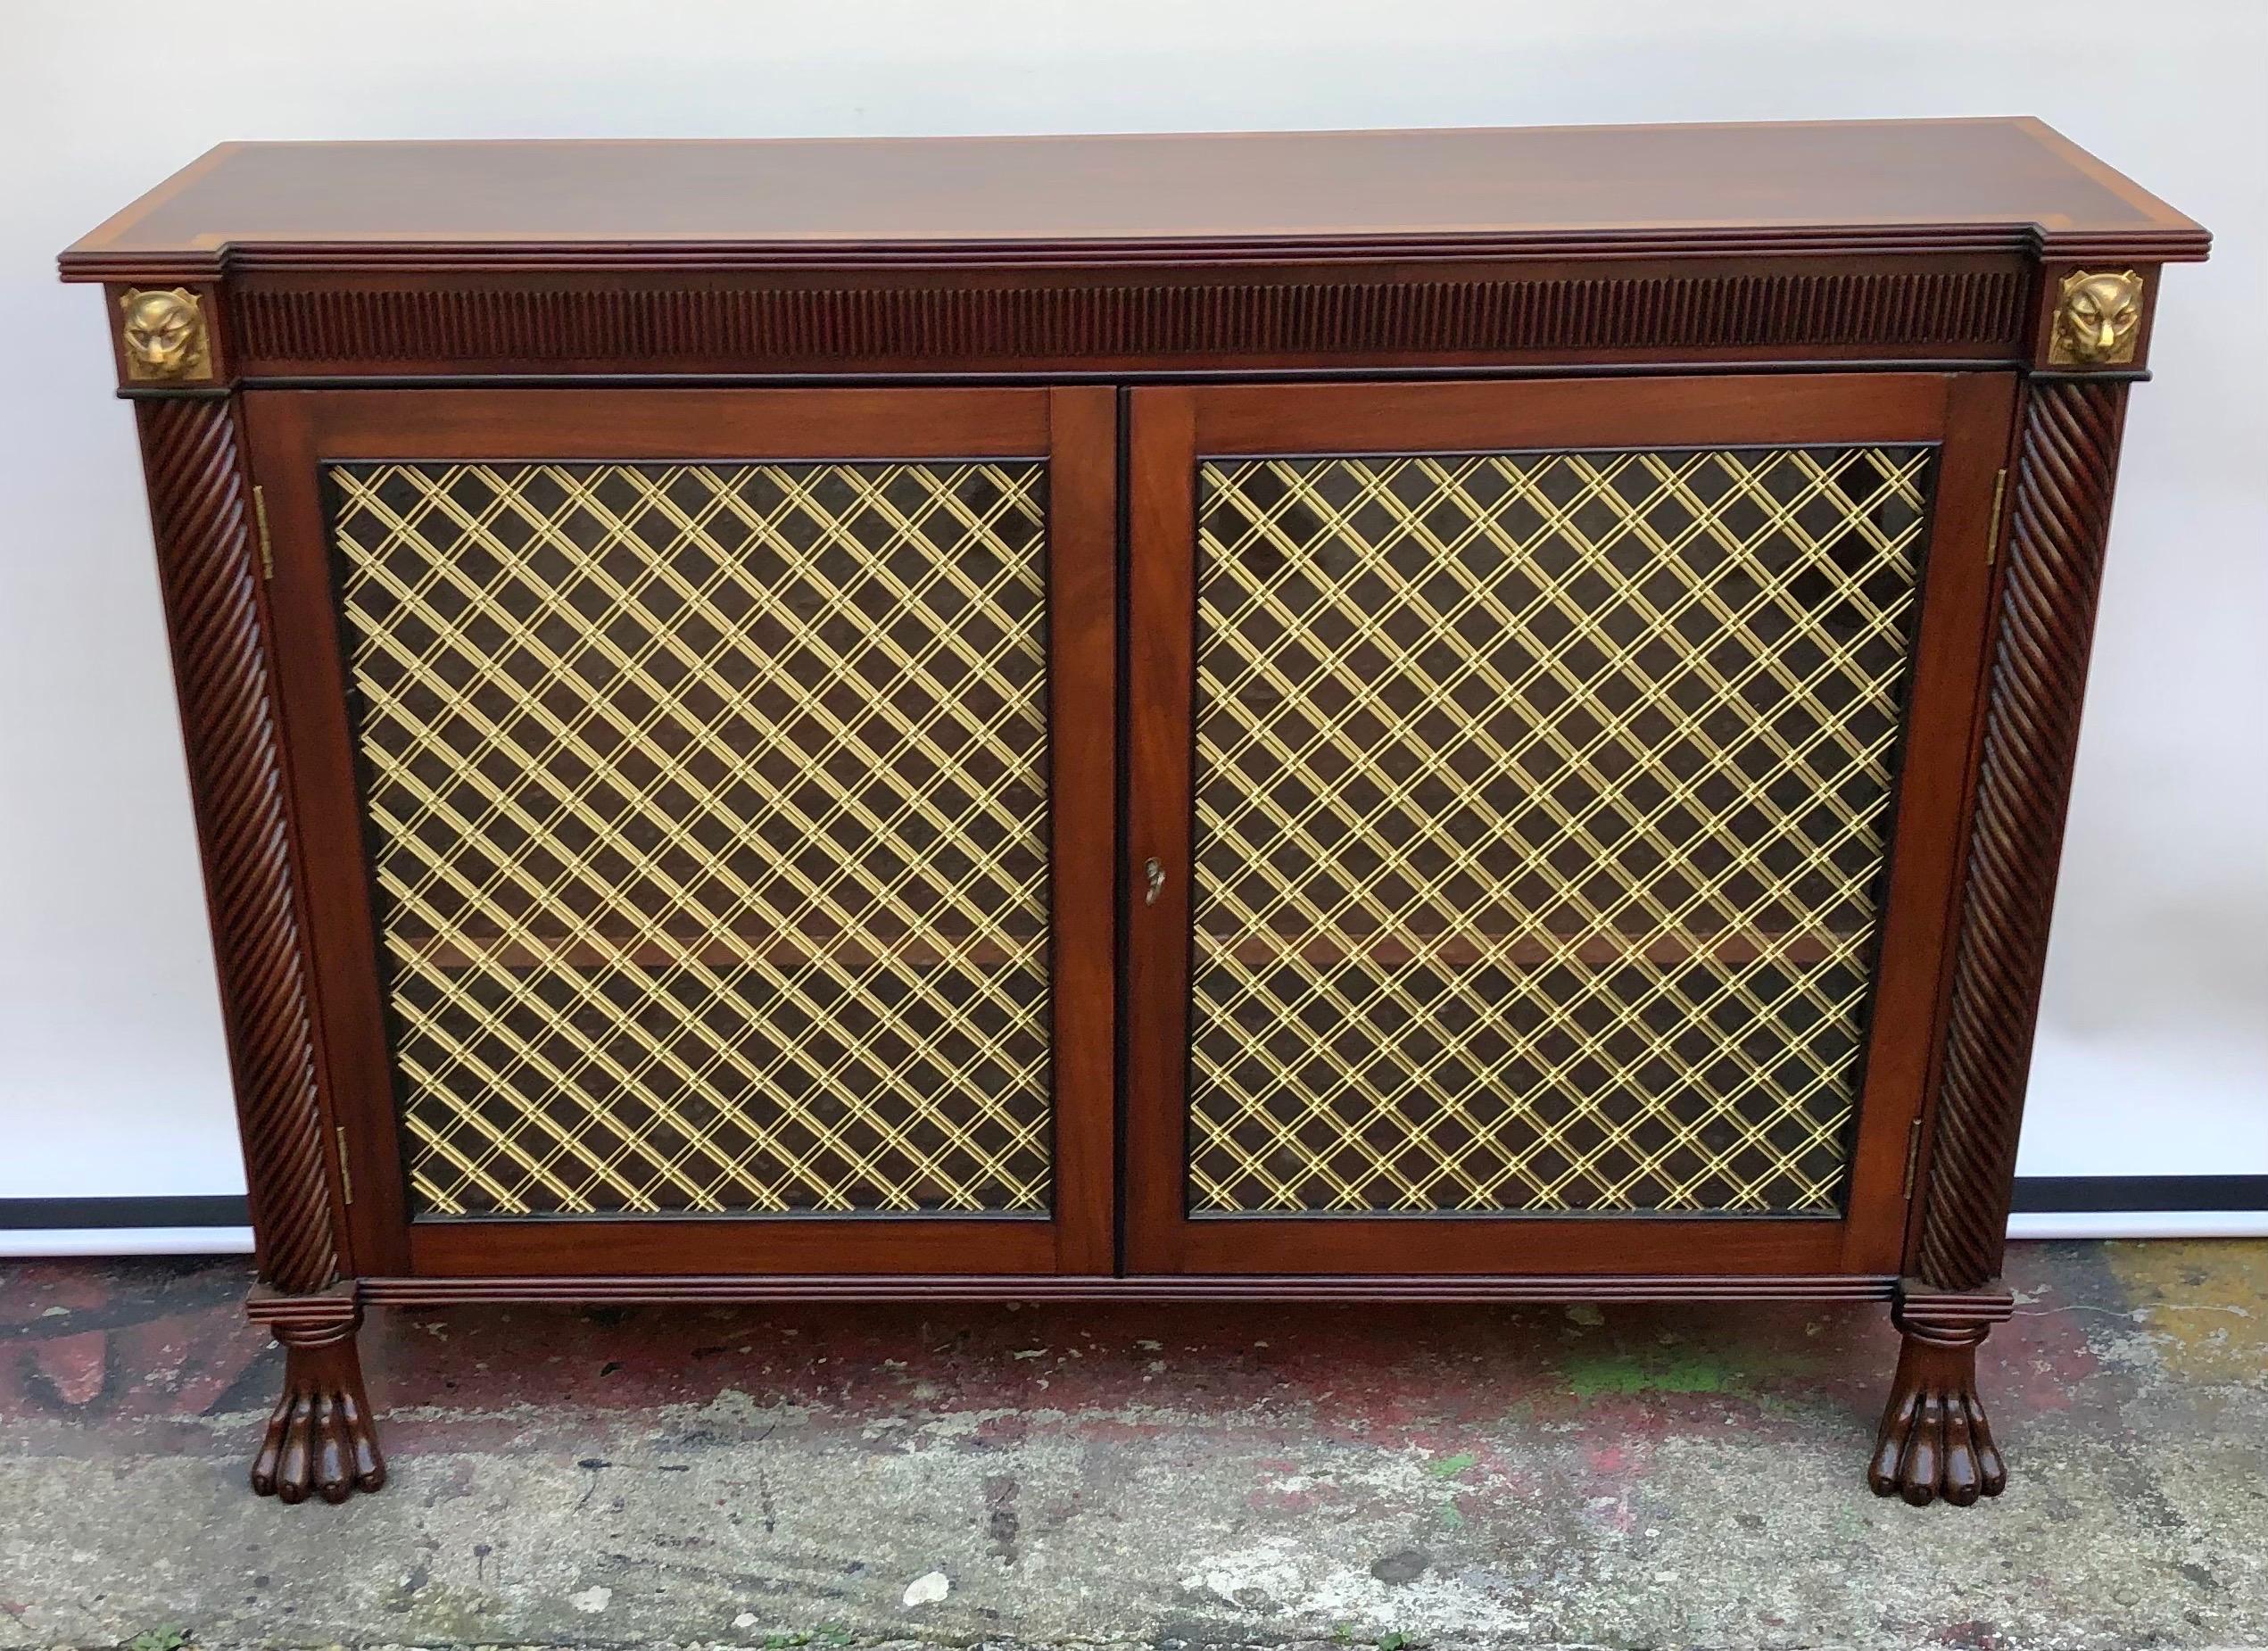 Cette crédence/meuble d'appoint à deux portes en acajou de style Régence anglaise a été fabriquée au début du 19e siècle en utilisant de l'acajou cubain de qualité avec des montures en bronze doré. Le plateau de la crédence Regency est constitué